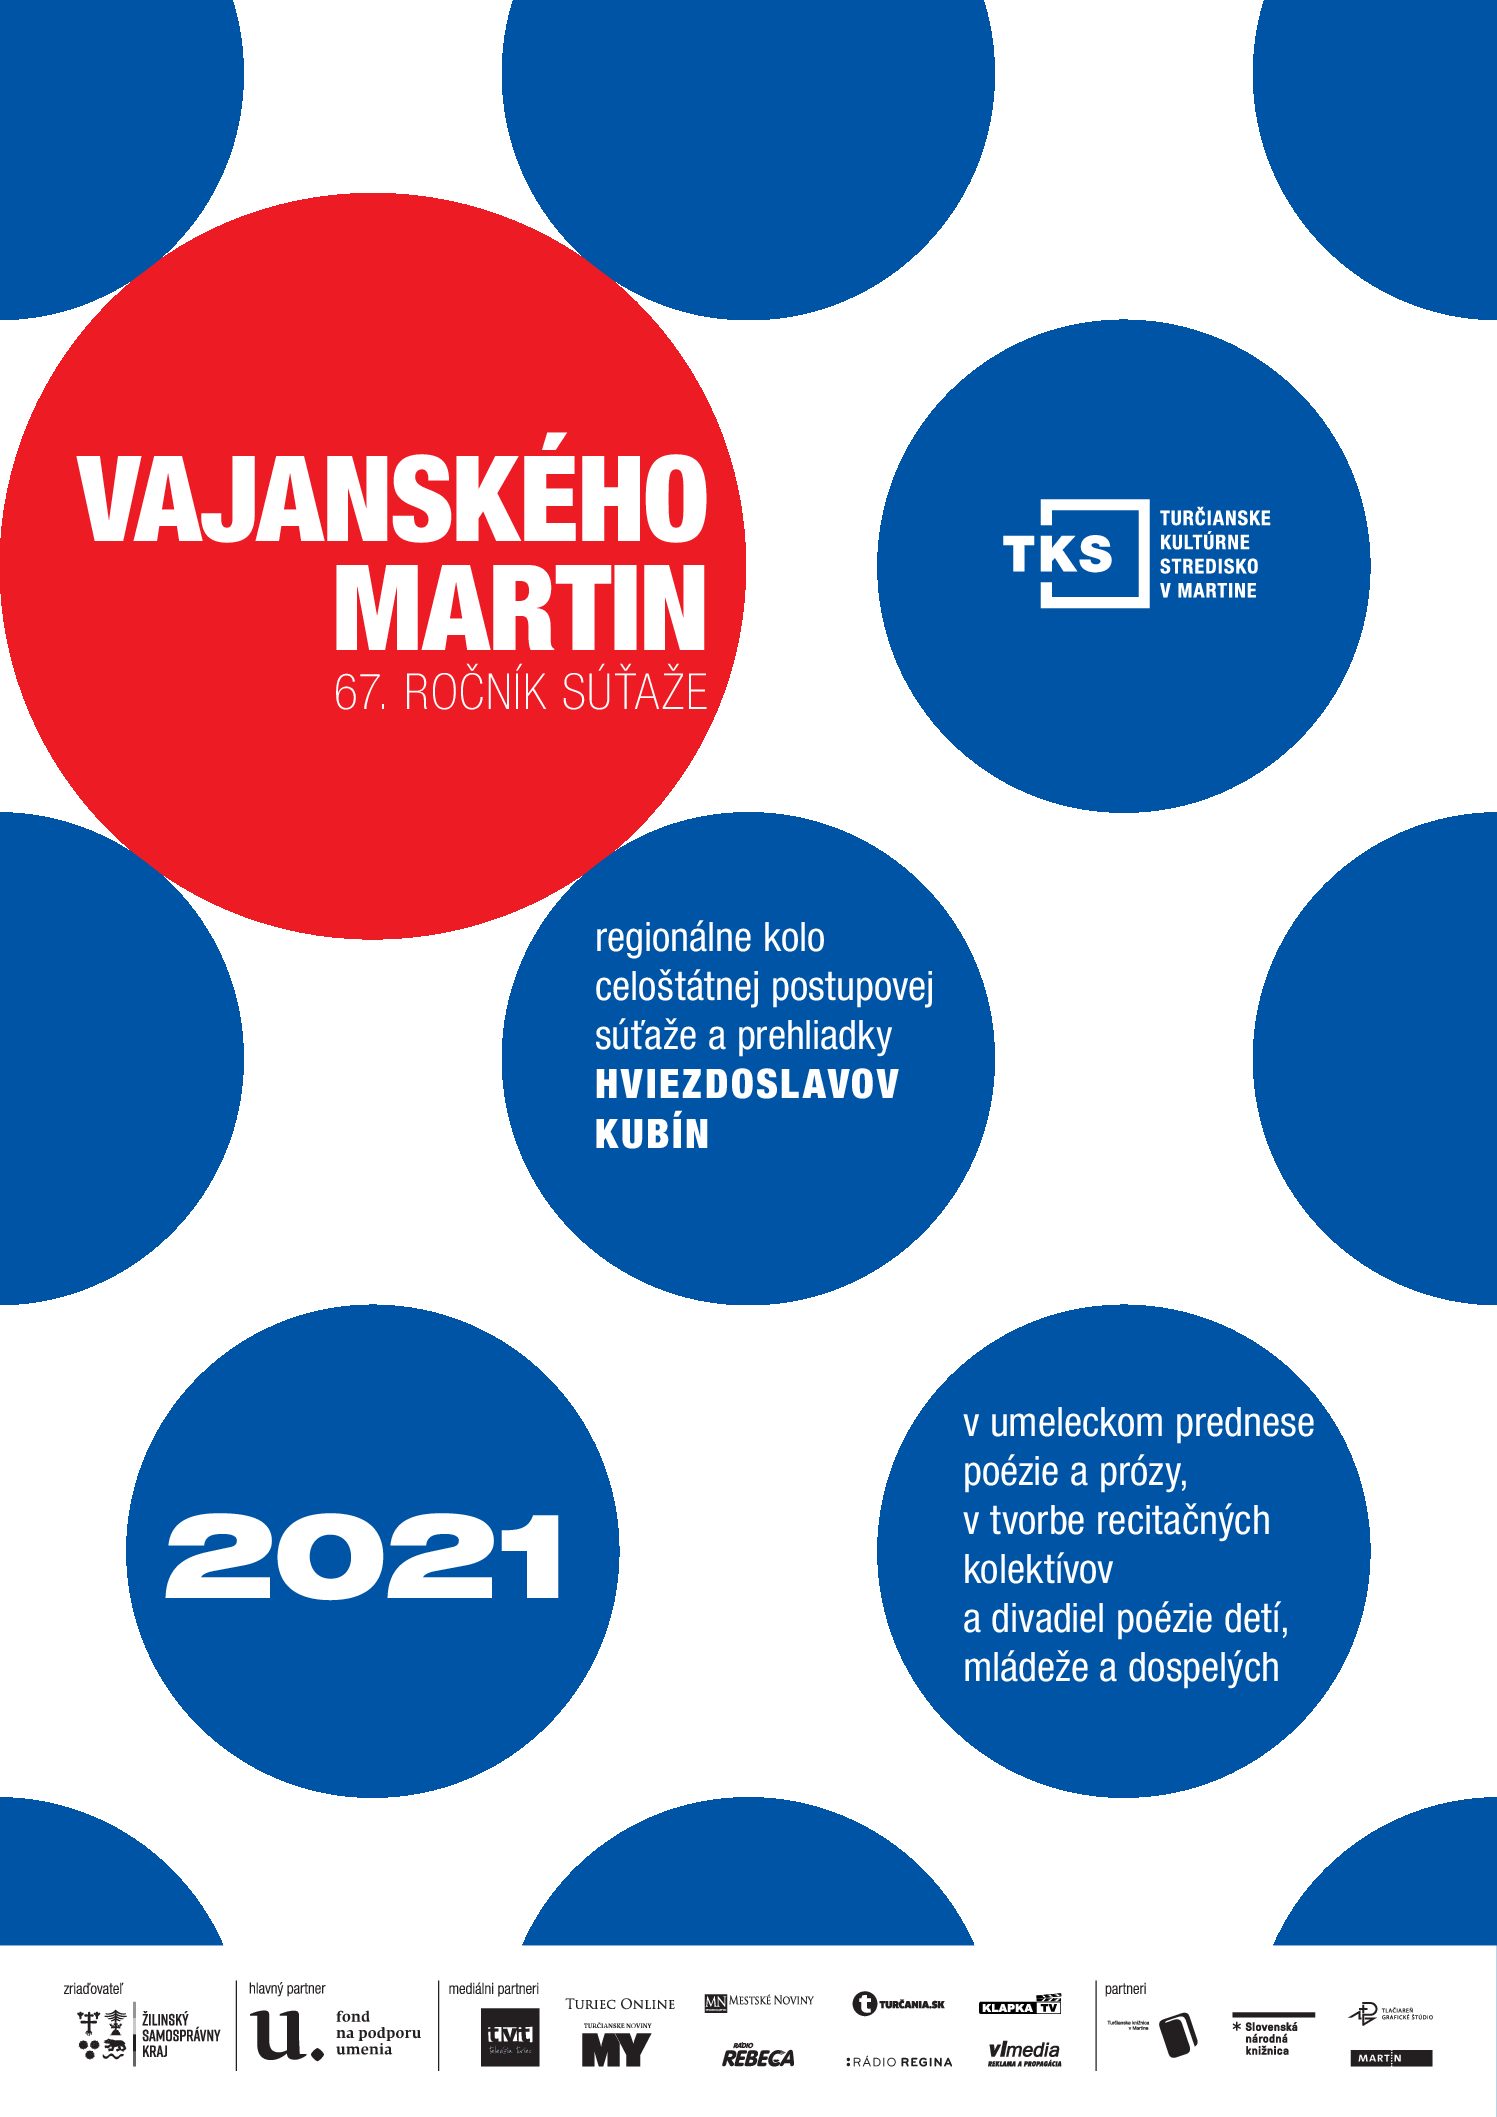 PRIHLASOVANIE do regionálneho kola Vajanského Martin 2021 JE OTVORENÉ